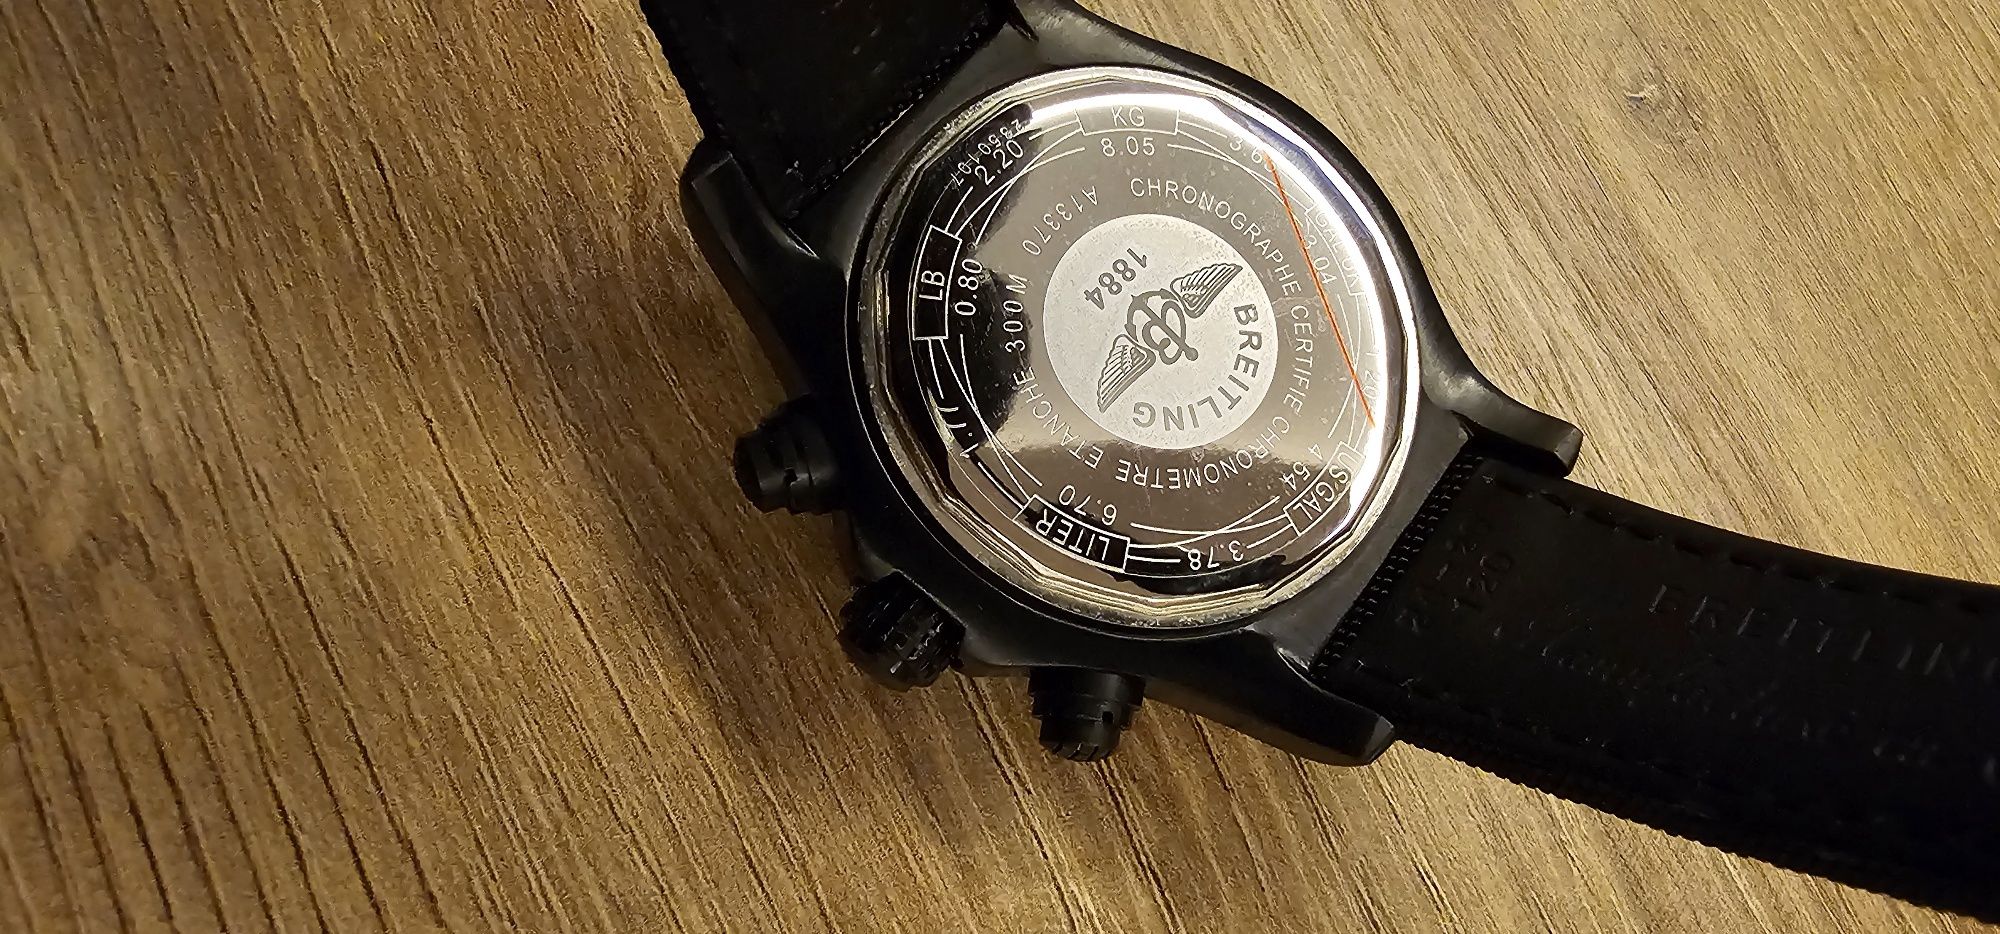 Breitling chronometre